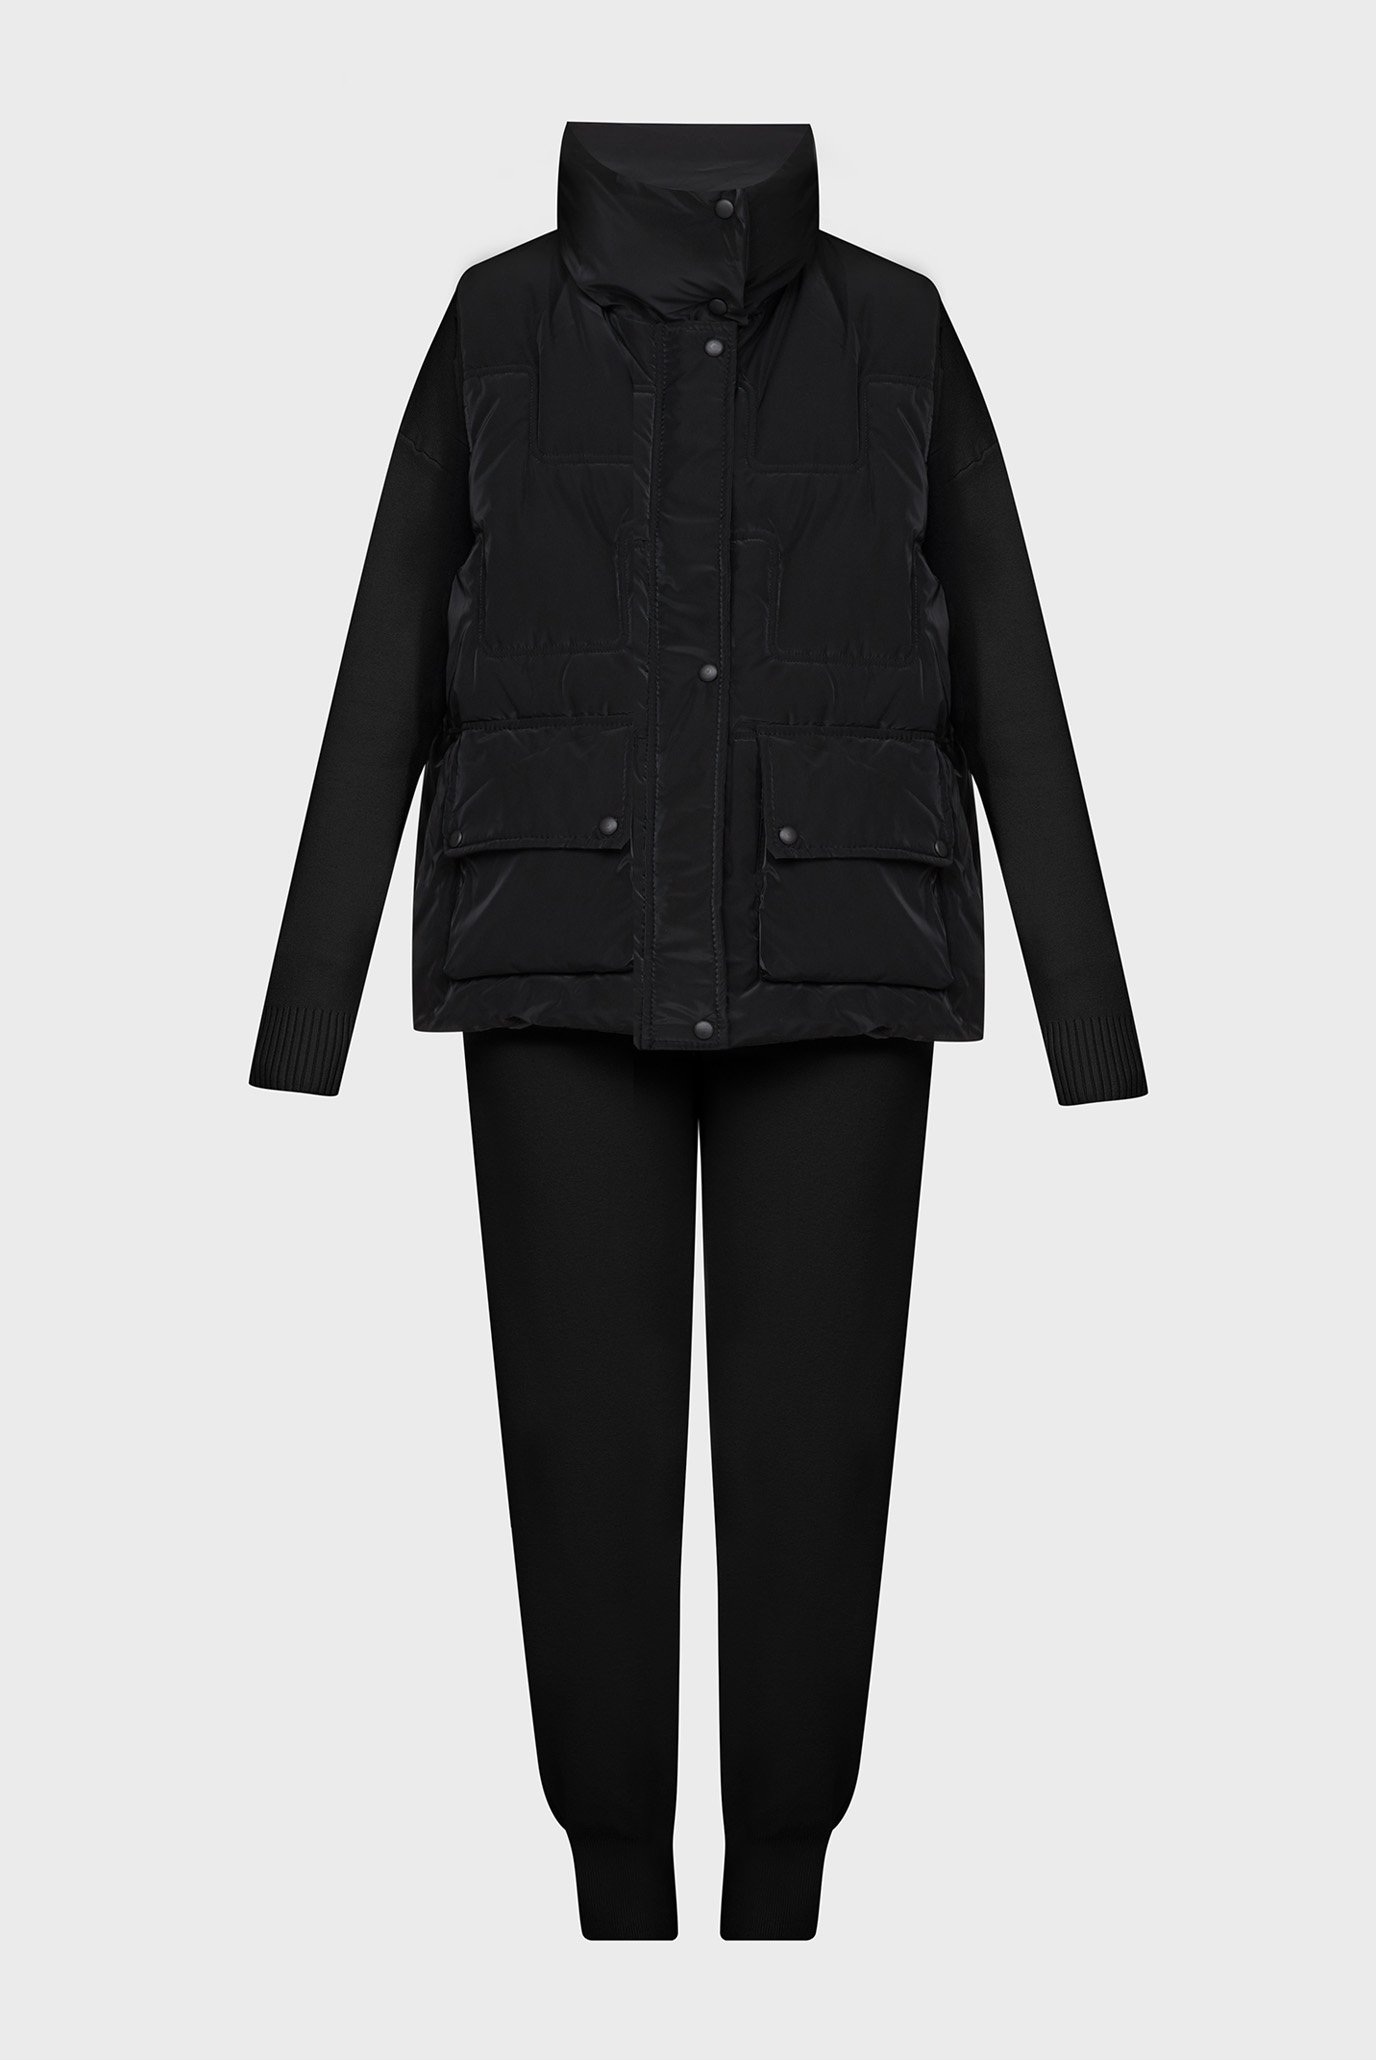 Женский черный комплект одежды (жилет, свитер, брюки) 1